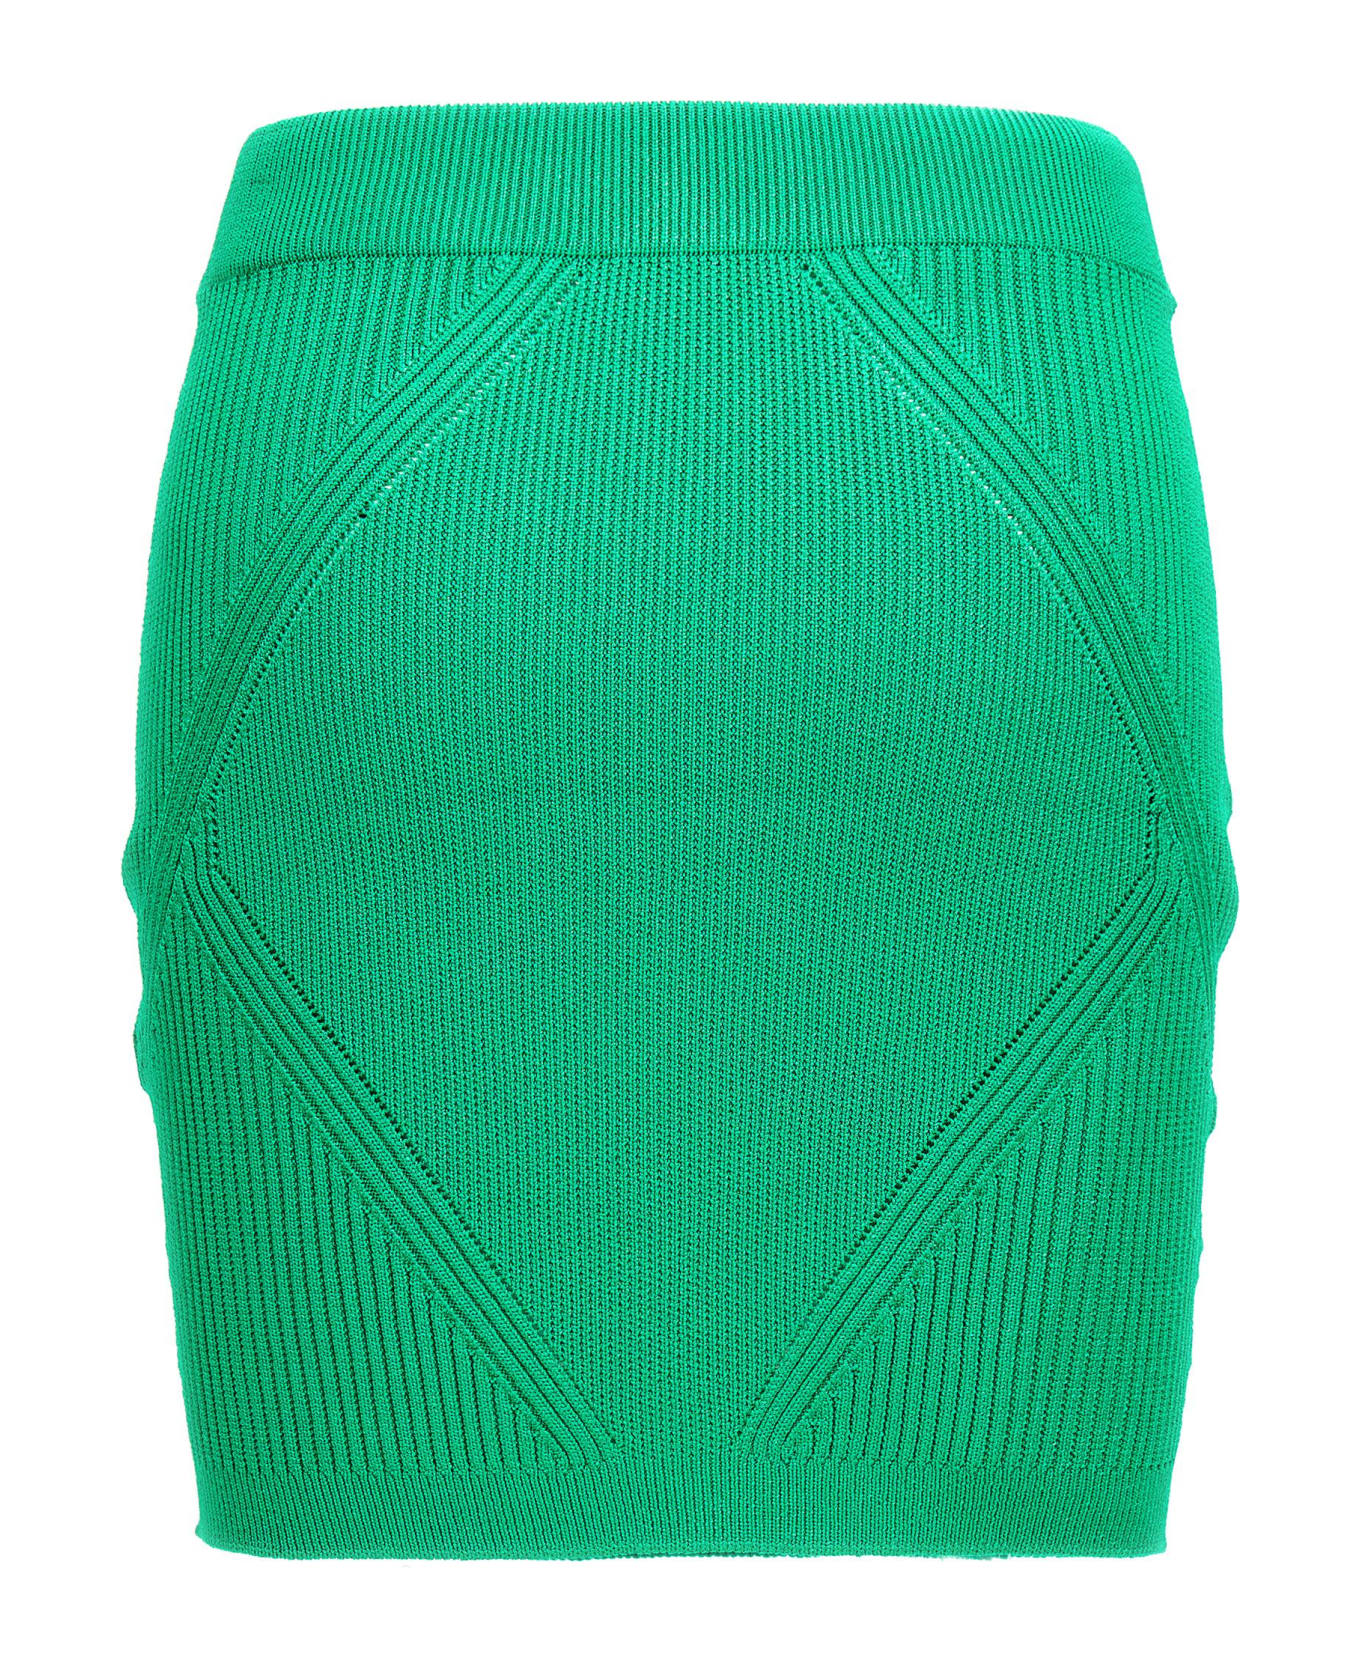 Balmain Knitted Skirt - Green スカート